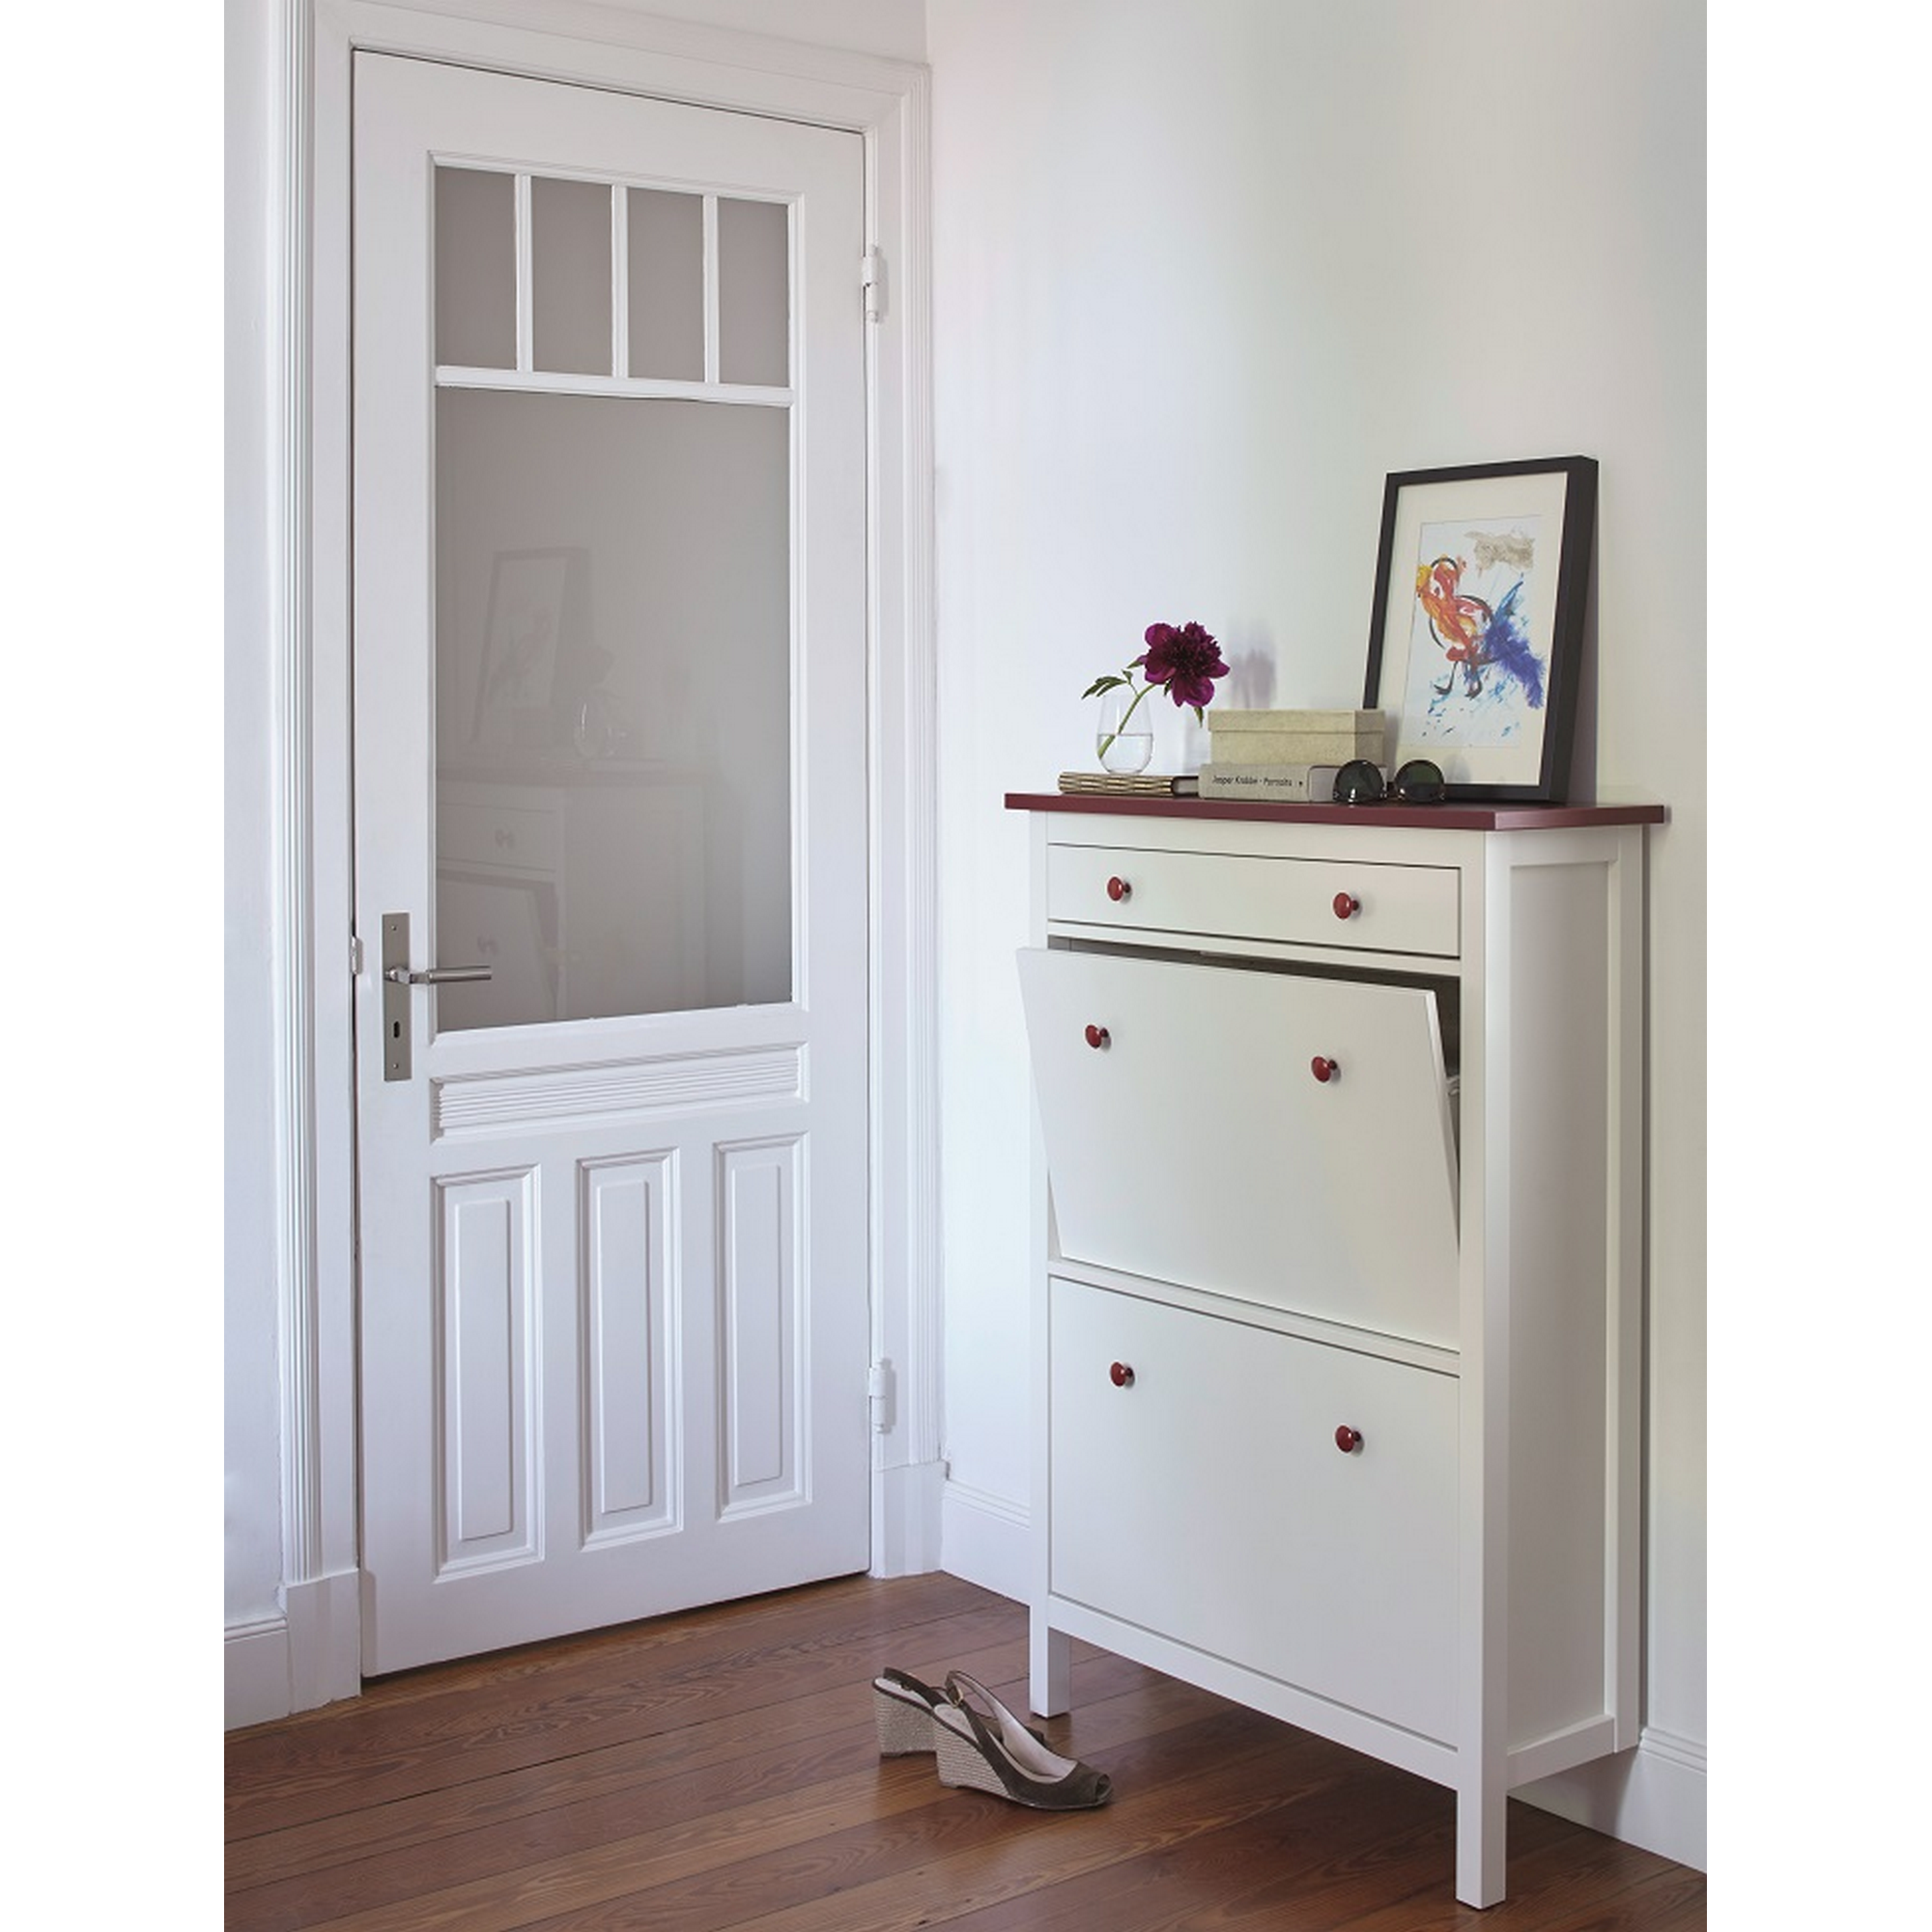 Weißlack für Möbel und Türen seidenmatt 2 l + product picture